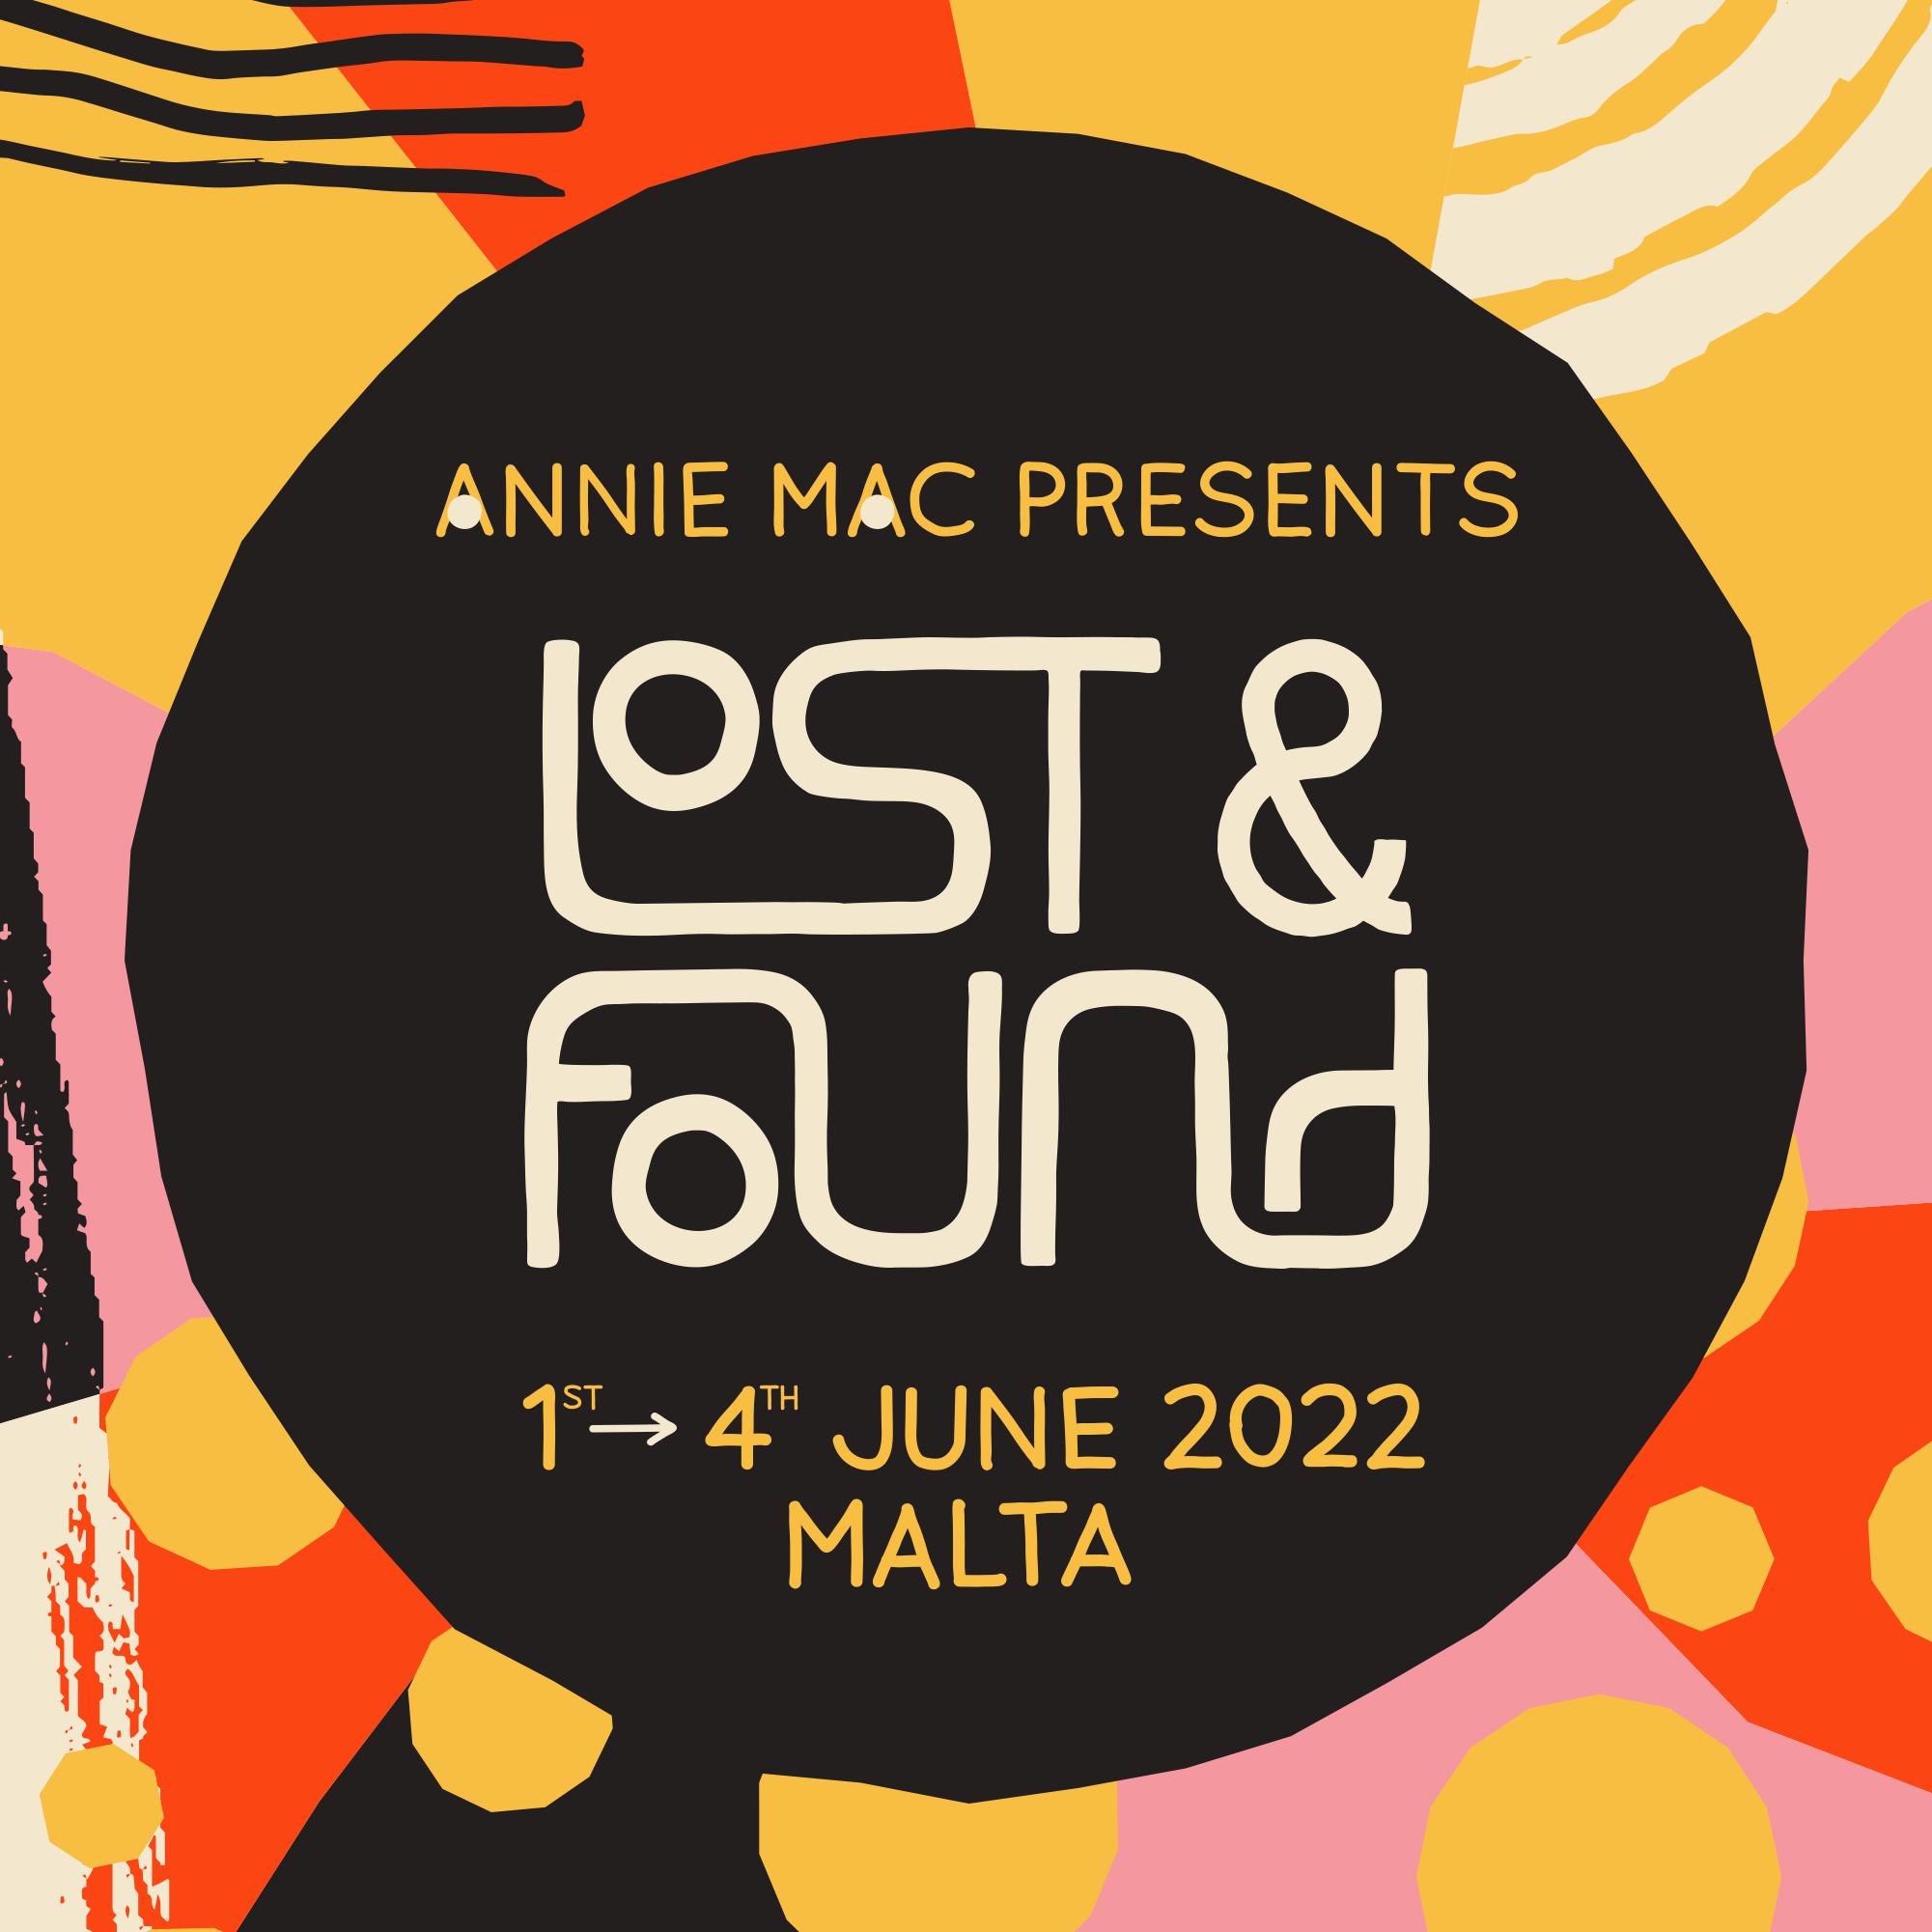 Lost & Found Festival